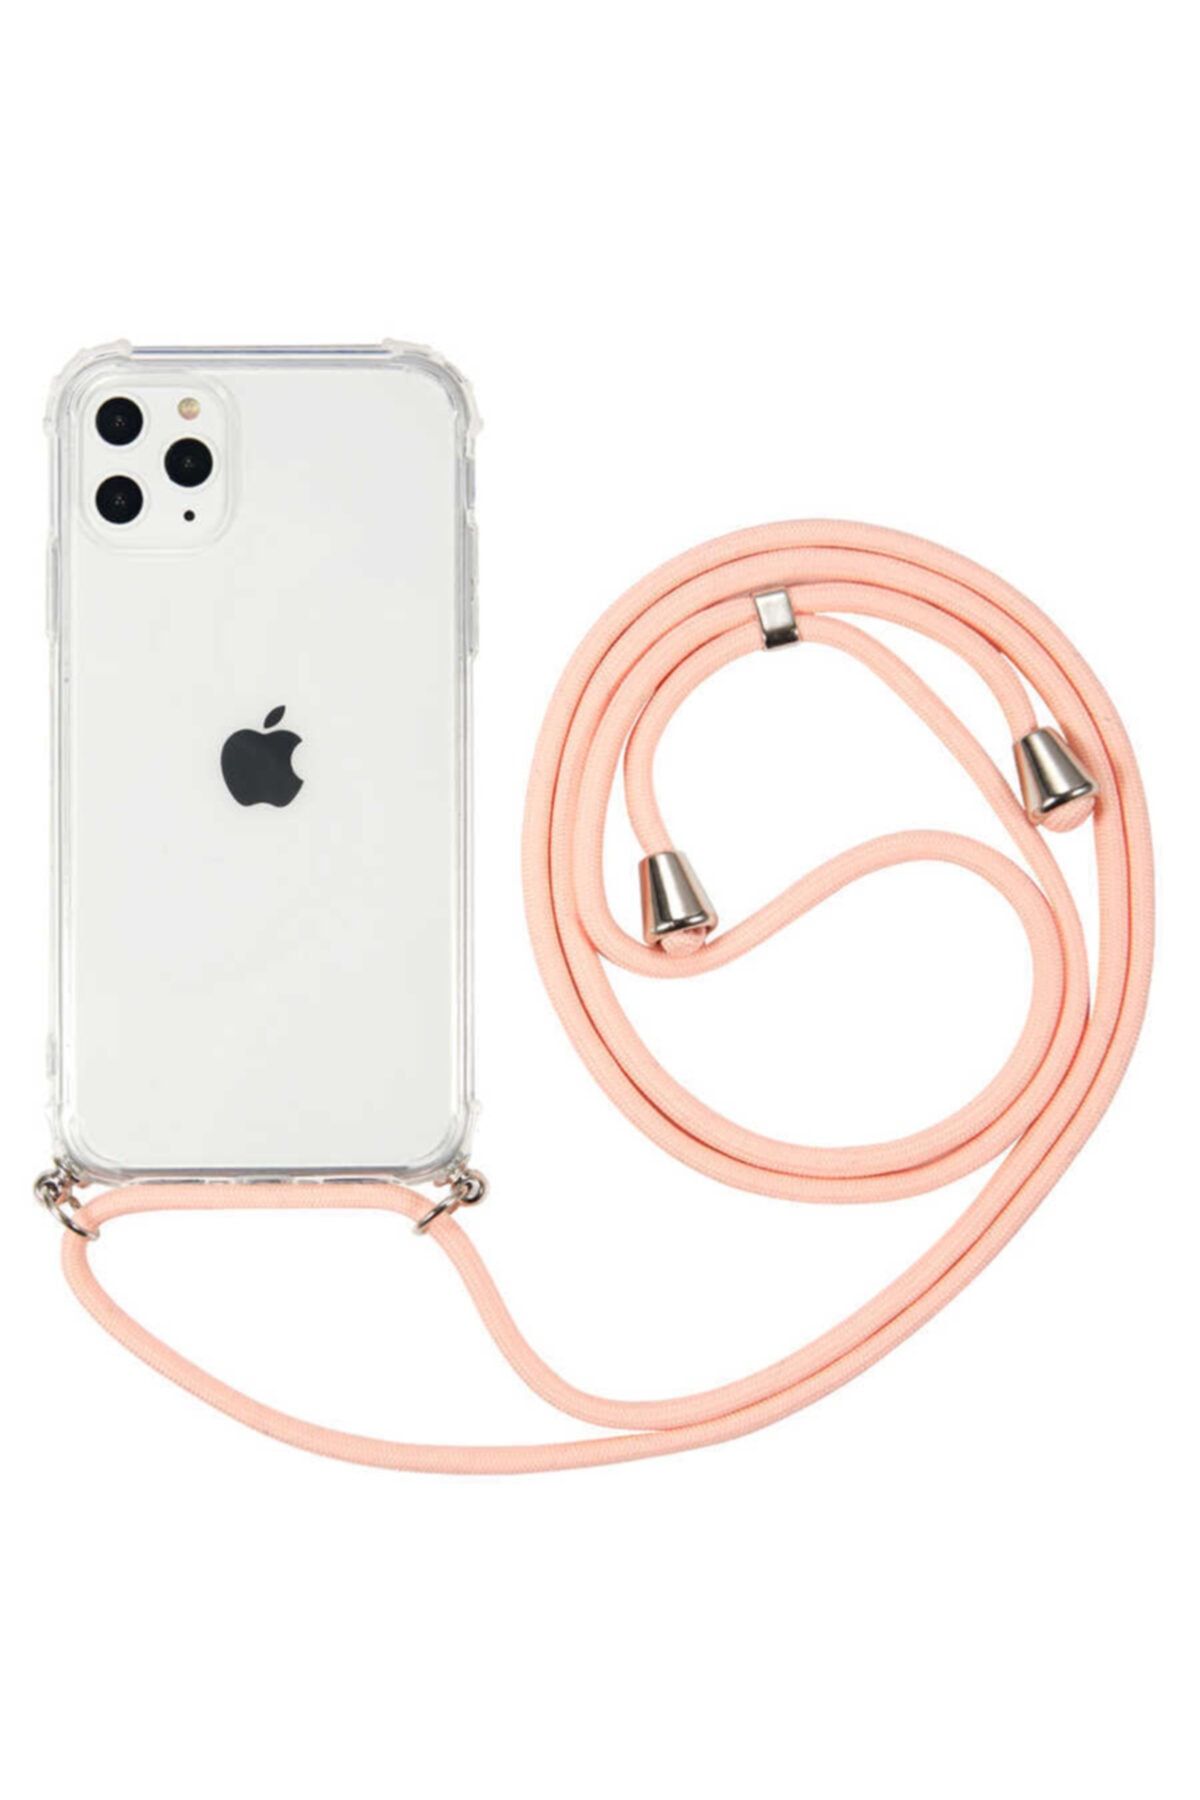 Fibaks Apple Iphone 11 Pro Kılıf Ipli Boyun Askılı Köşe Korumalı Şeffaf Kapak